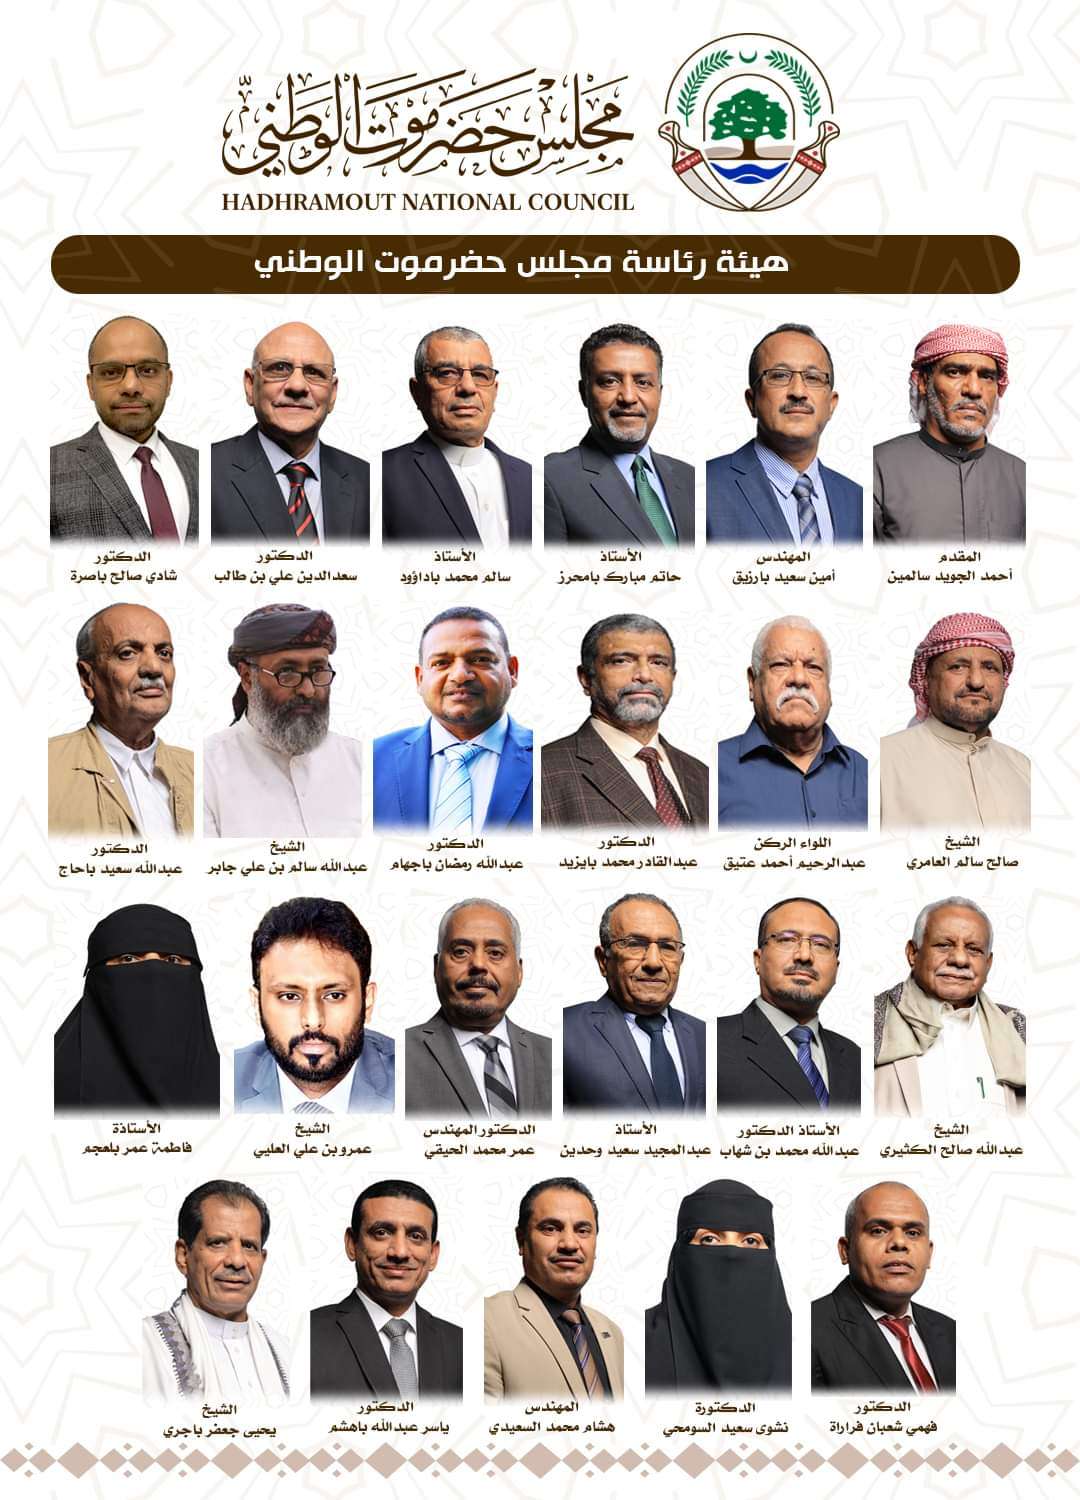 أسماء وصور قيادات مجلس حضرموت الوطني الذي أعلن عنه في الرياض